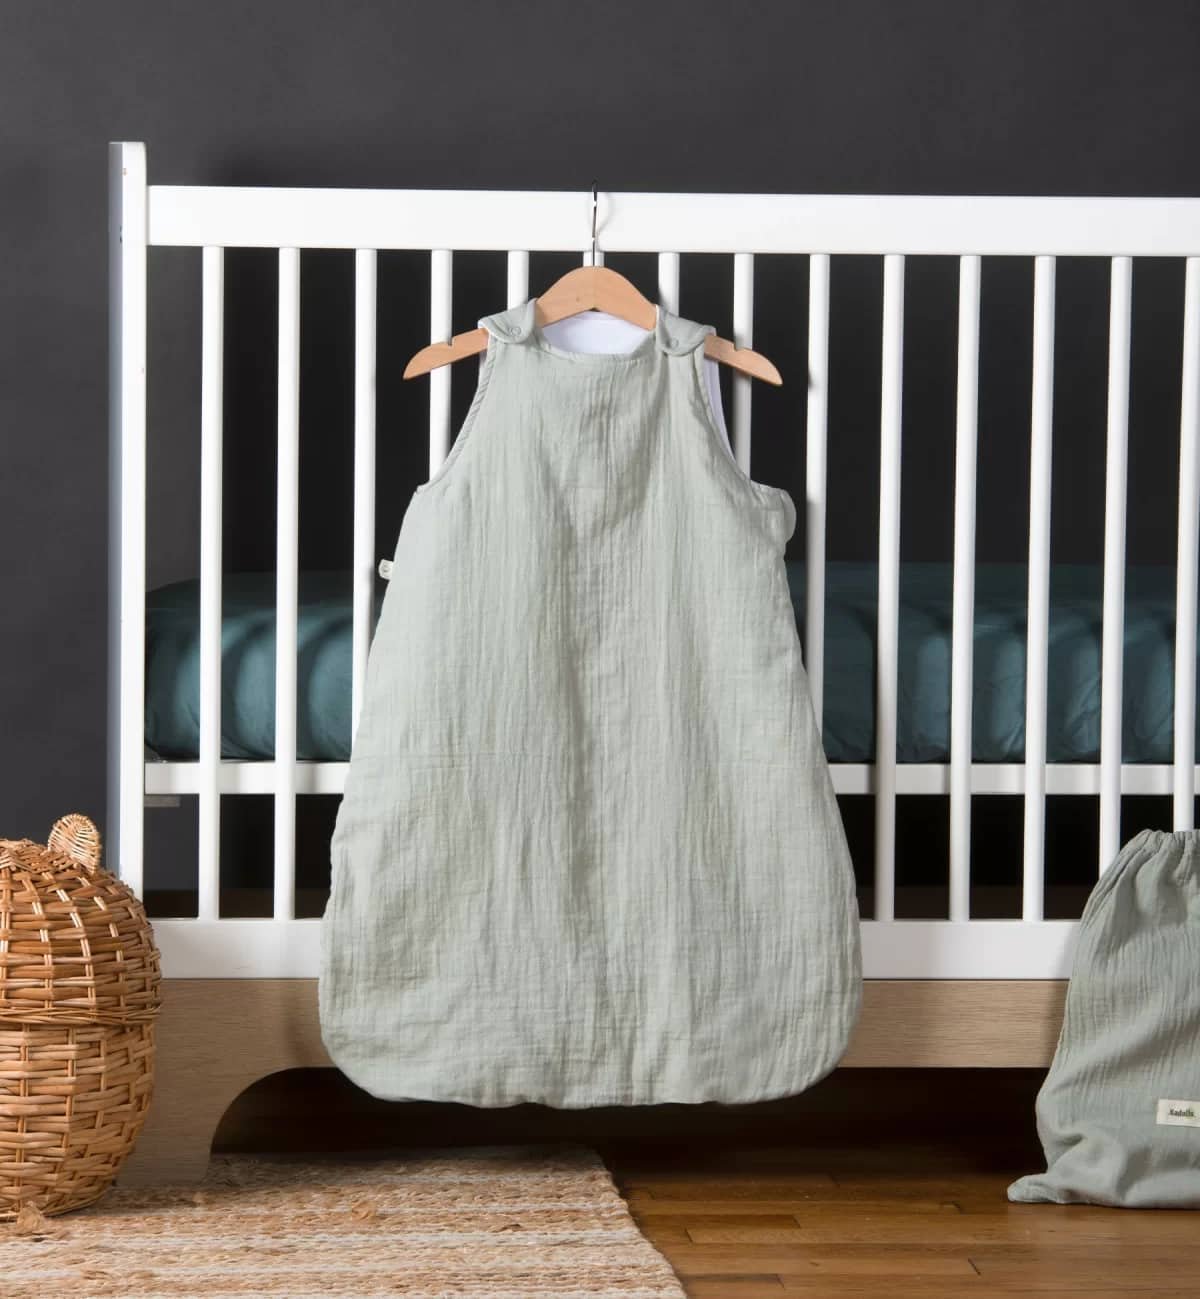 Hoe kies je een slaapzak voor je baby?